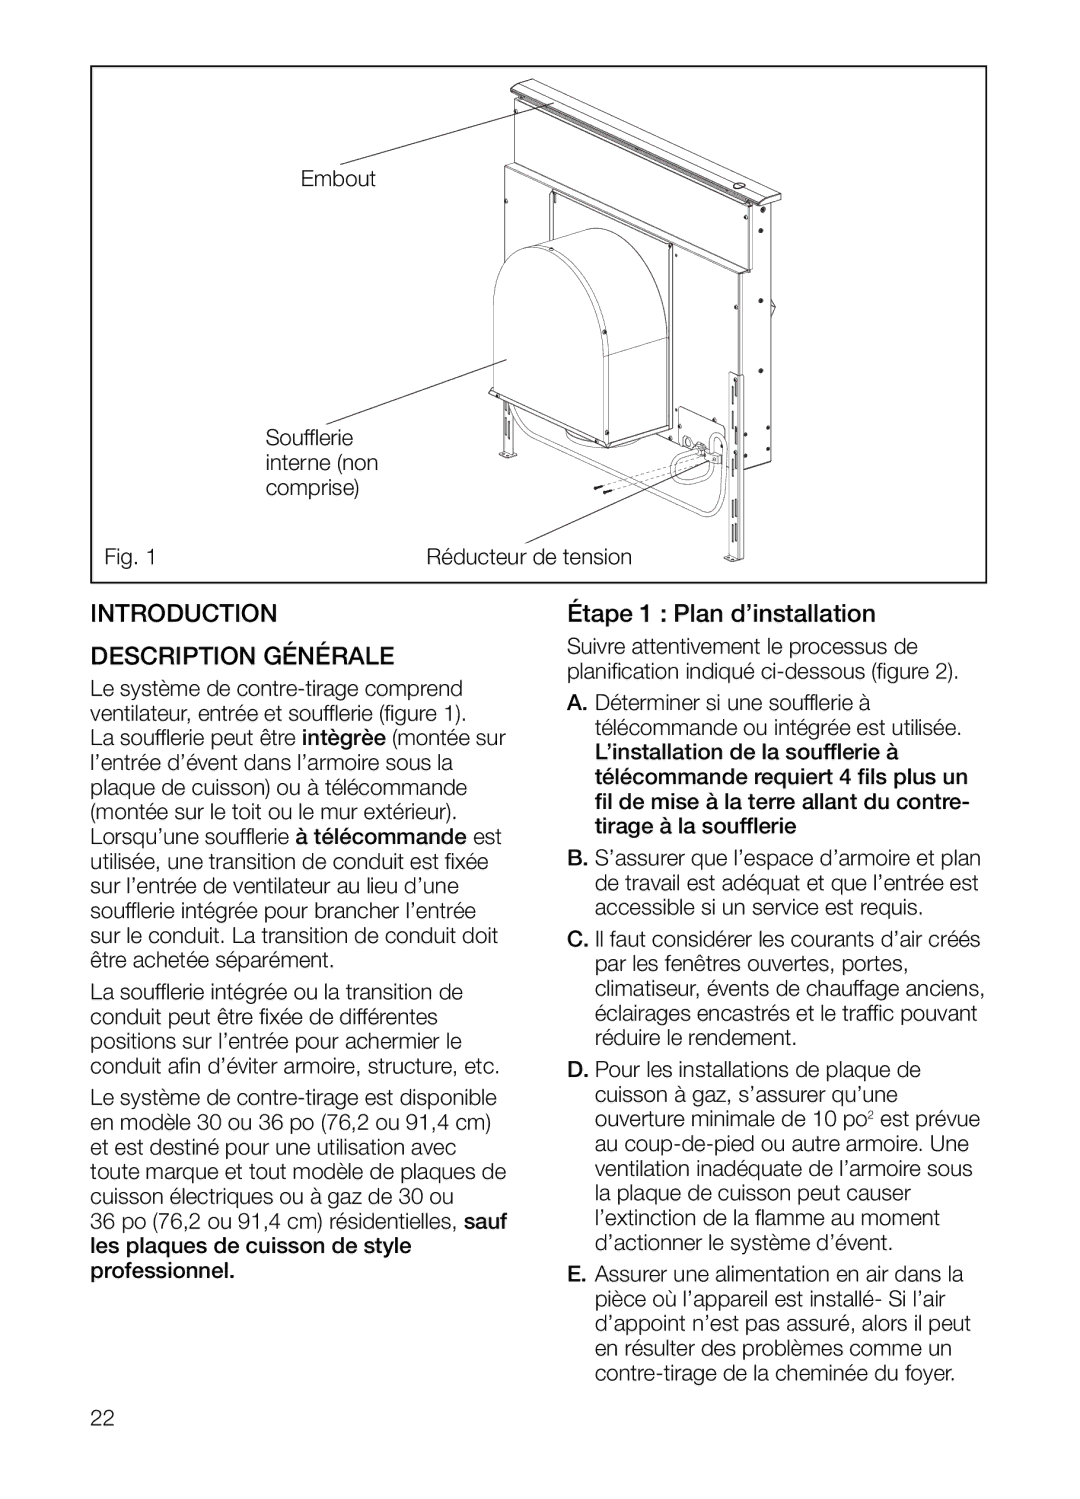 Thermador UCVM36FS, UCVM30FS manual Étape 1 Plan d’installation, Description Générale 